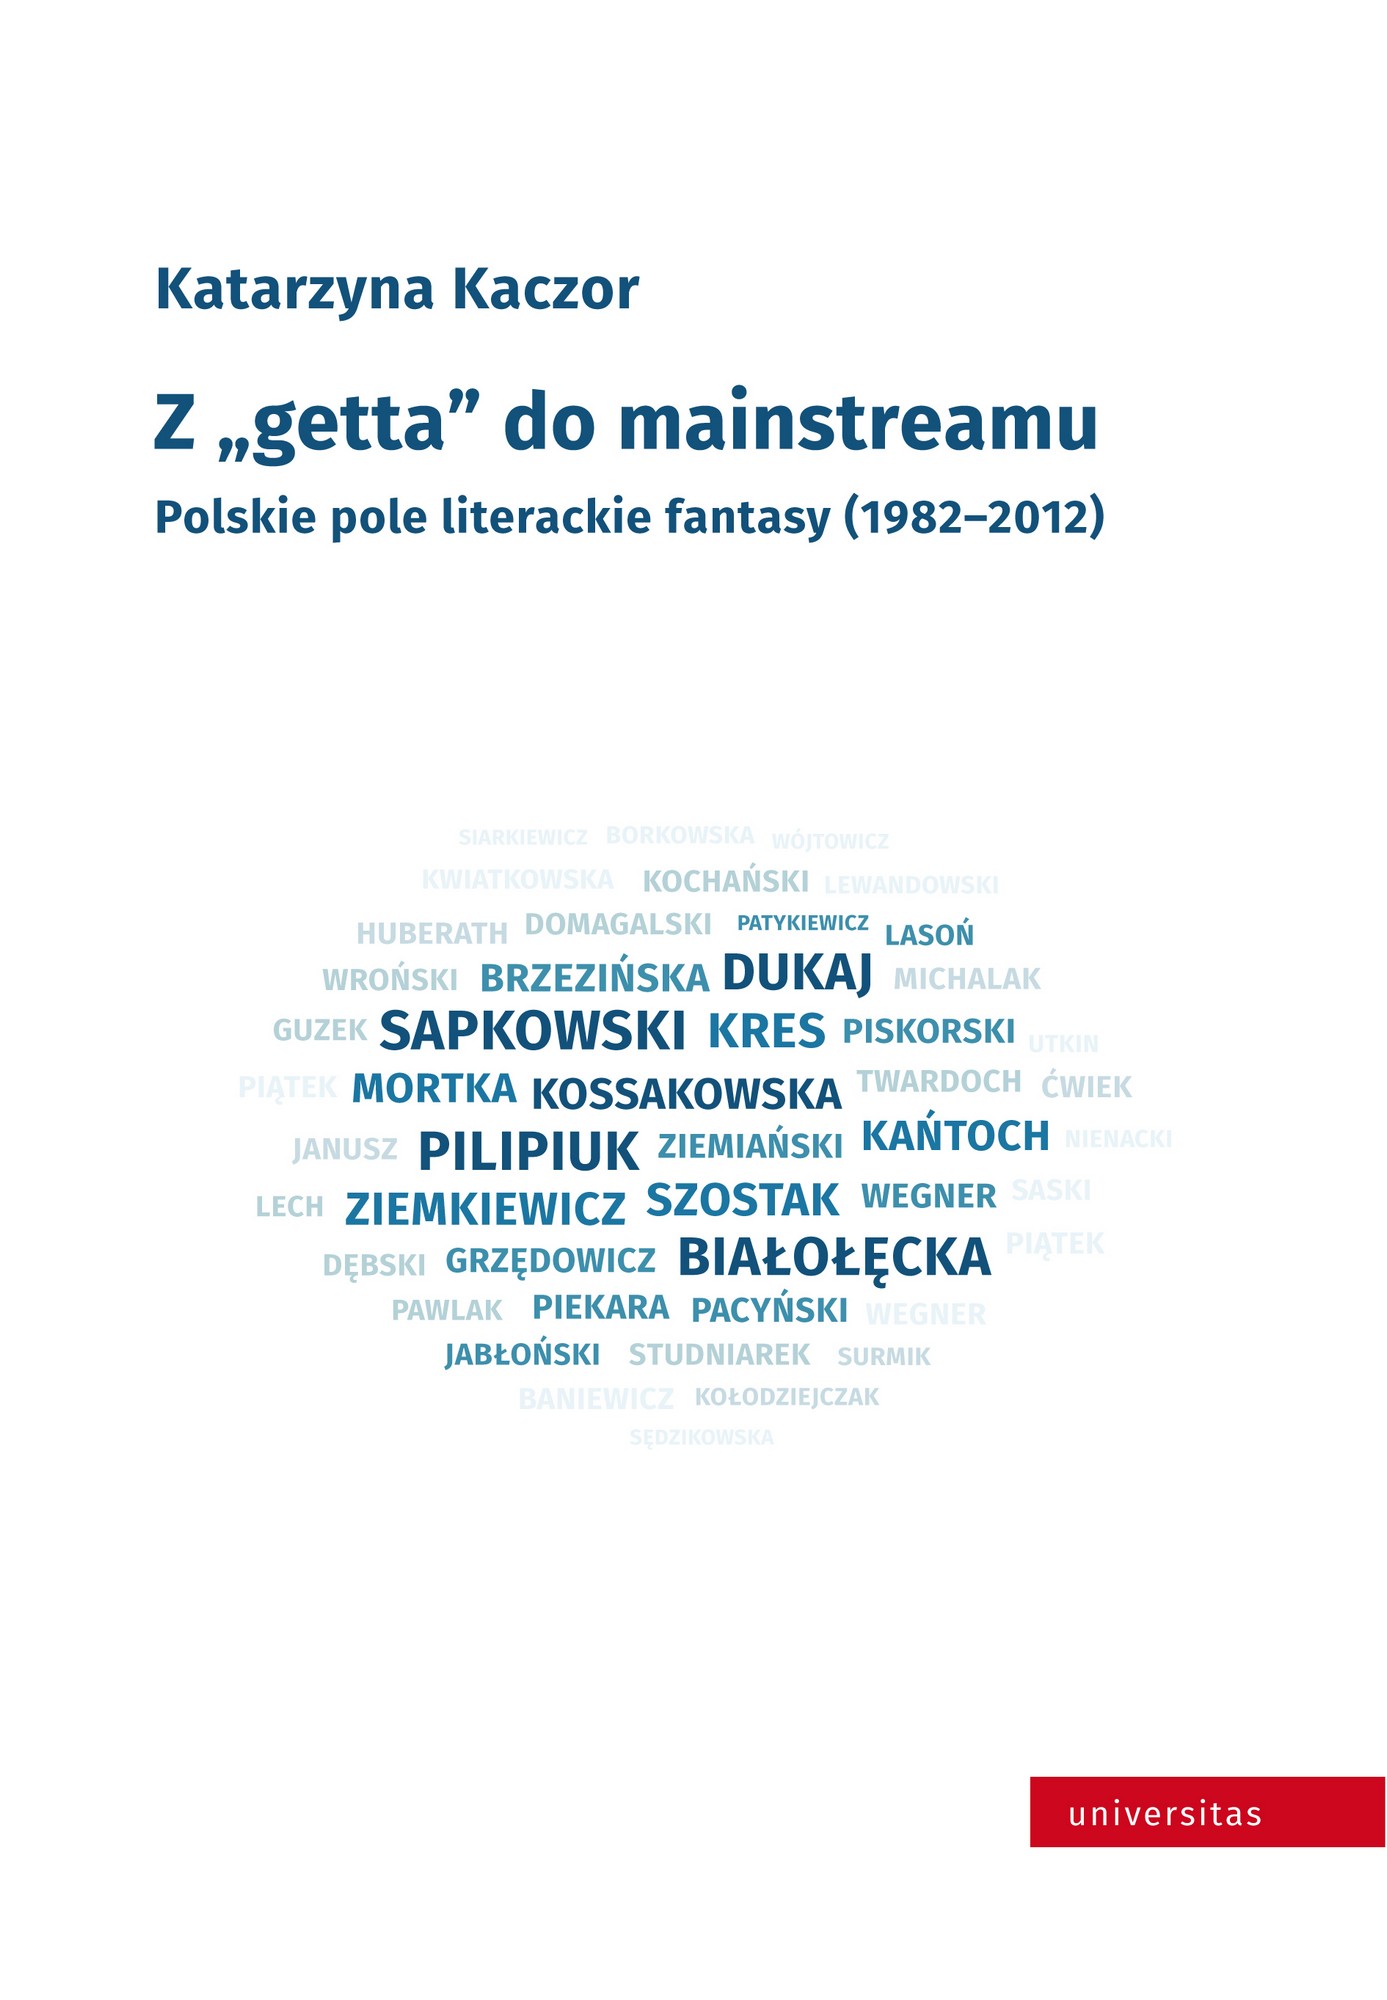 Katarzyna Kaczor, „Z getta do maistreamu. Polskie pole literackie fantasy (1982–2012)” – okładka (źródło: materiały wydawcy)